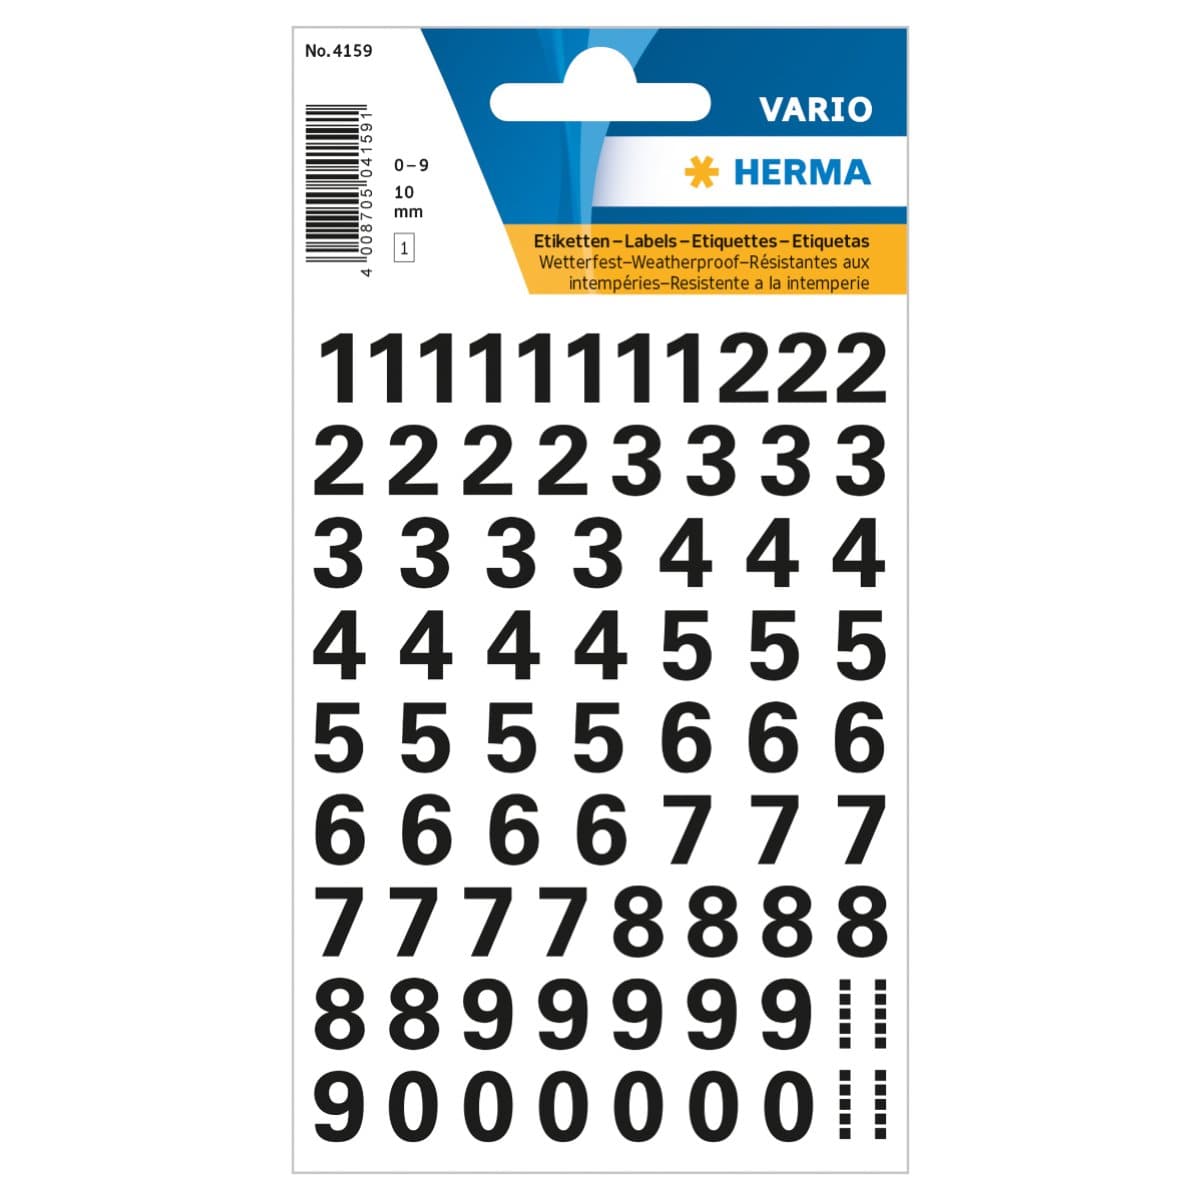 Herma Vario Sticker Numbers 0-9, 10mm, weatherproof film, 1sheet/pack, Black